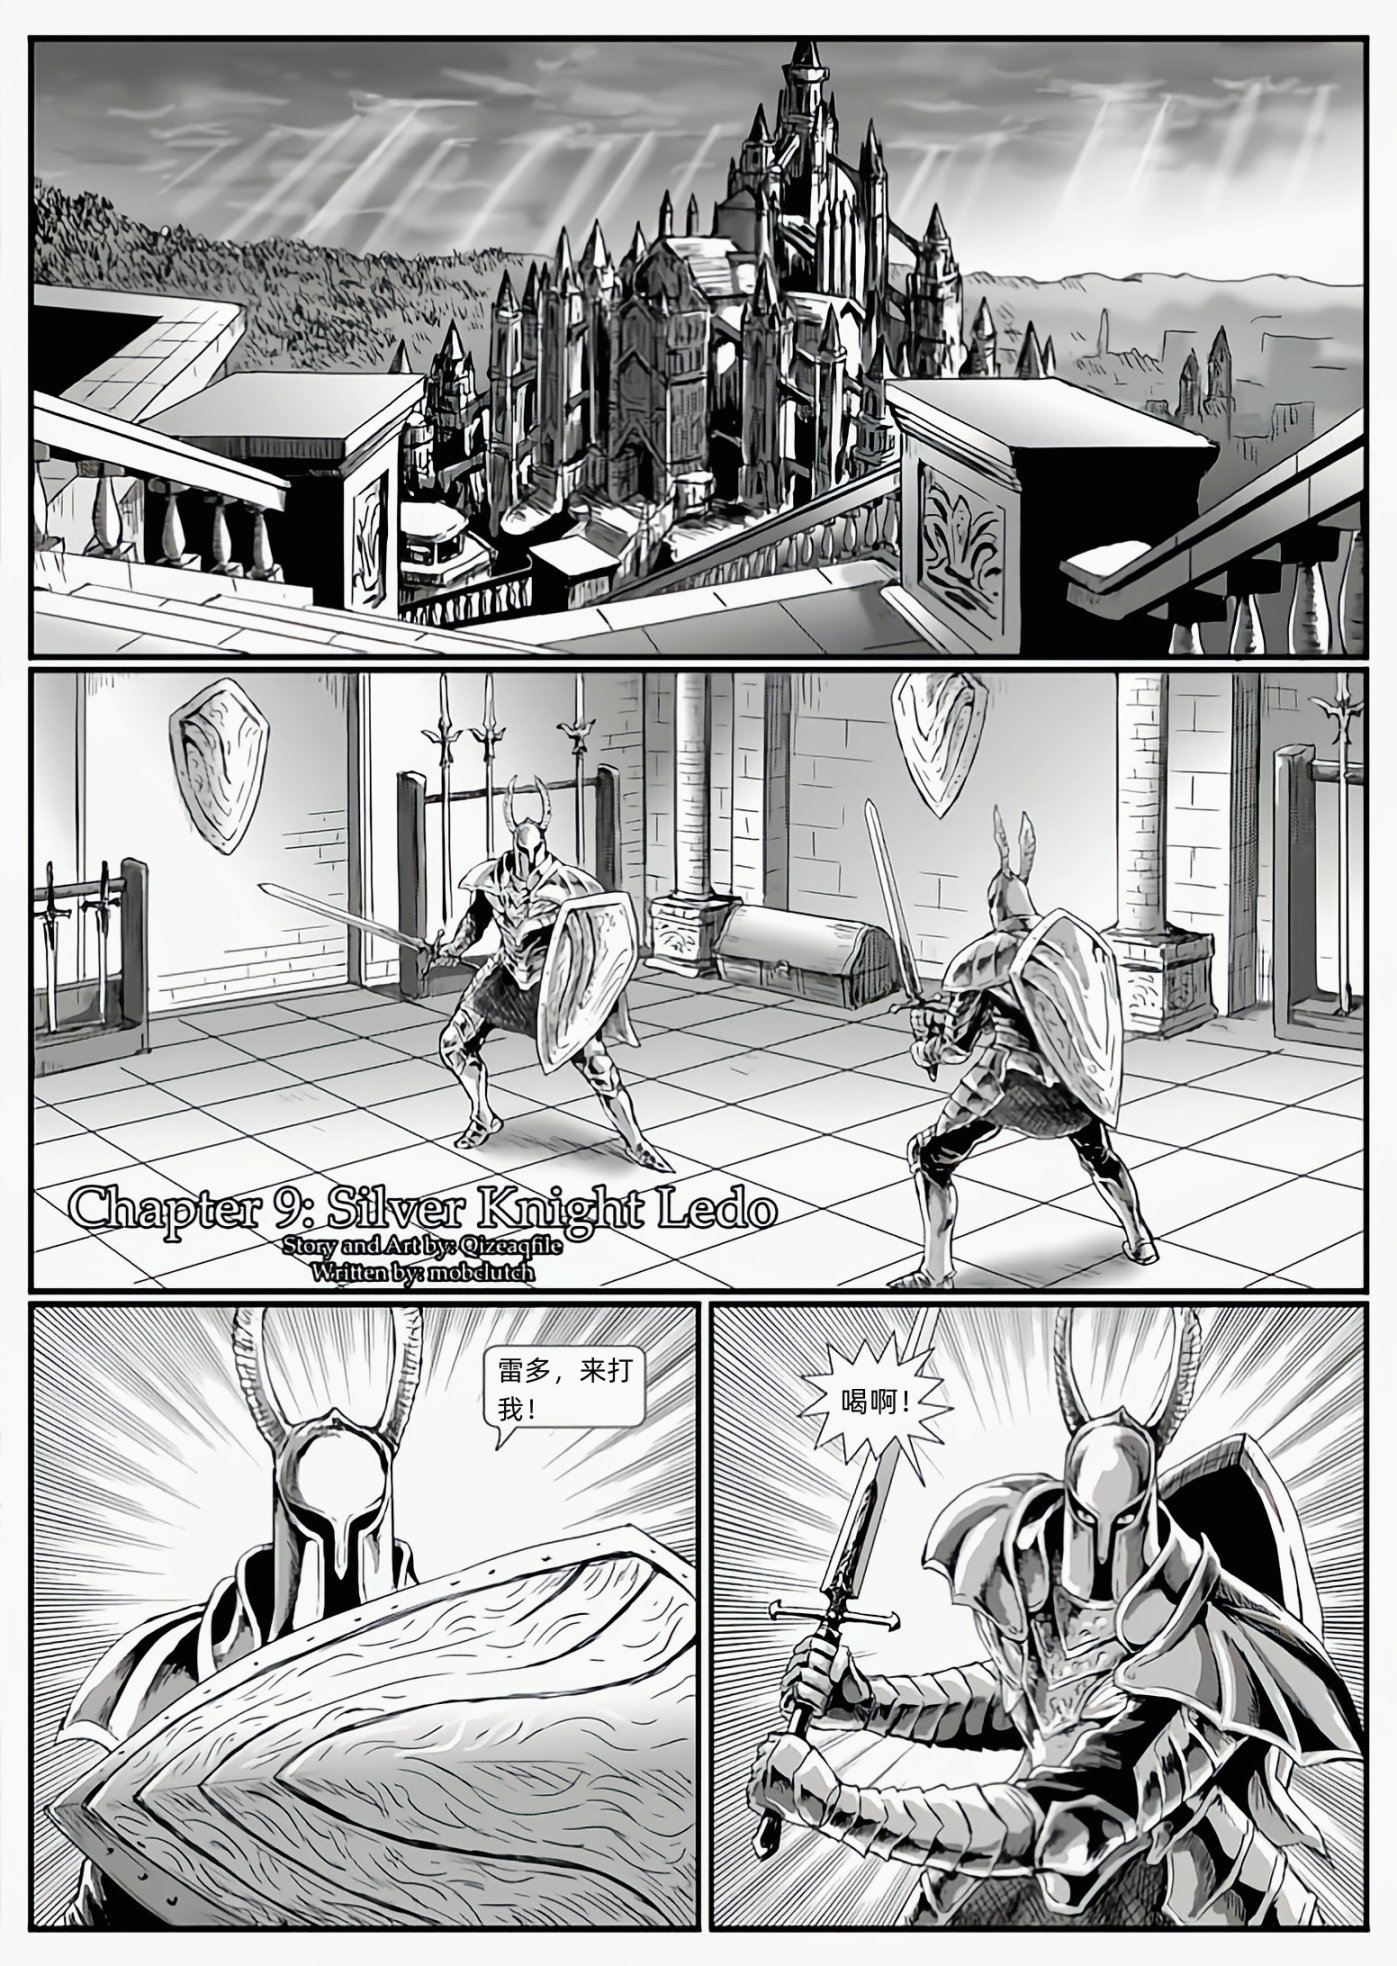 【漫画】黑暗之魂：猎龙战争（chap9银骑士雷多-chap10坚石与大锤